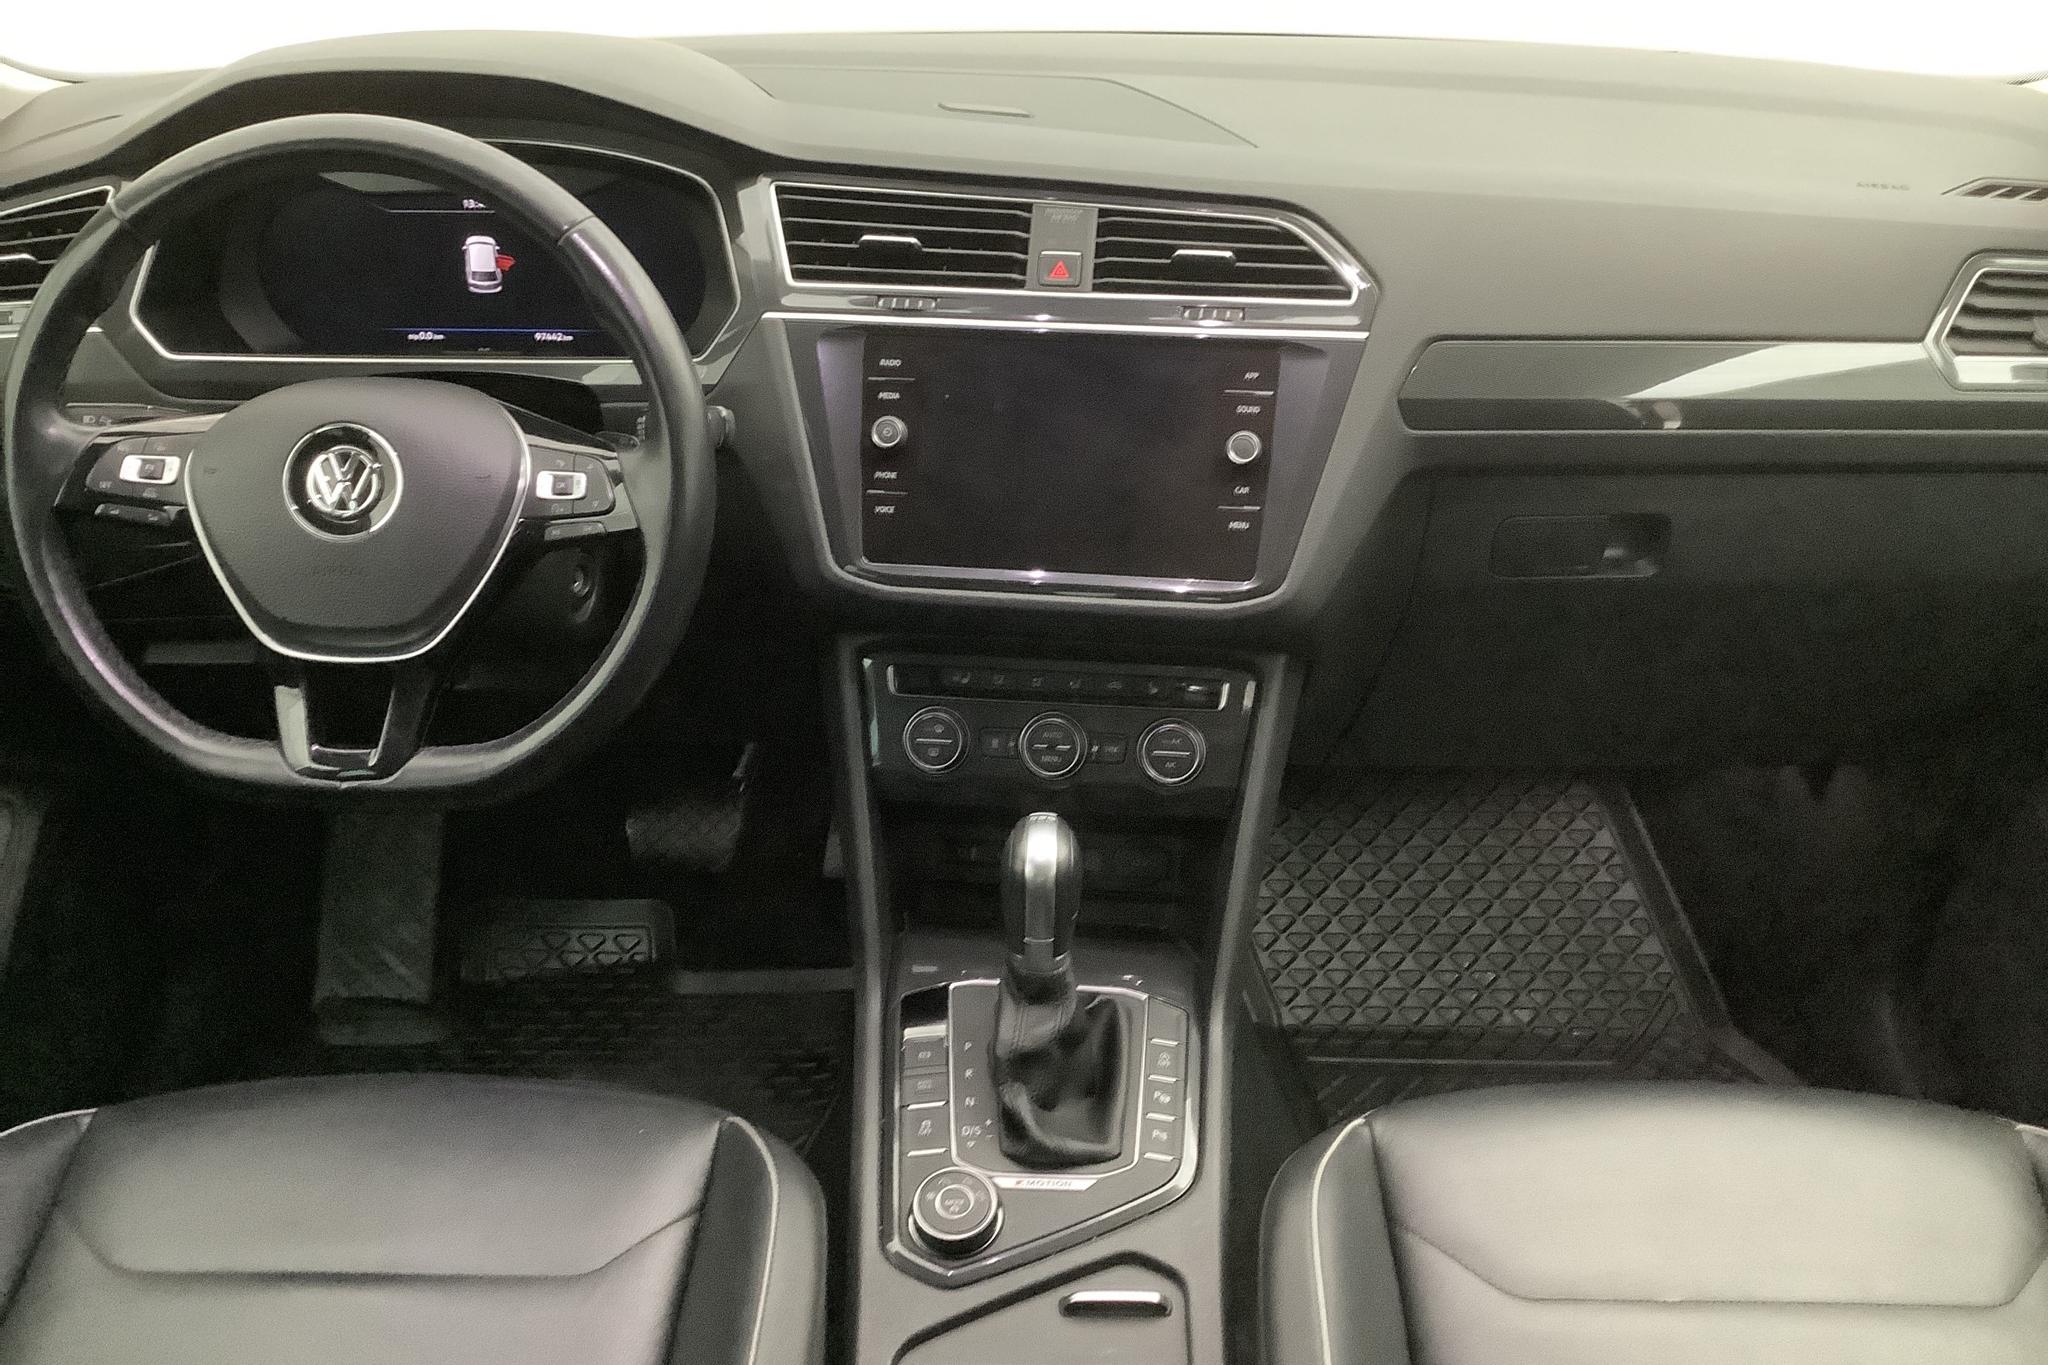 VW Tiguan 2.0 TDI 4MOTION (190hk) - 97 450 km - Automatic - silver - 2018